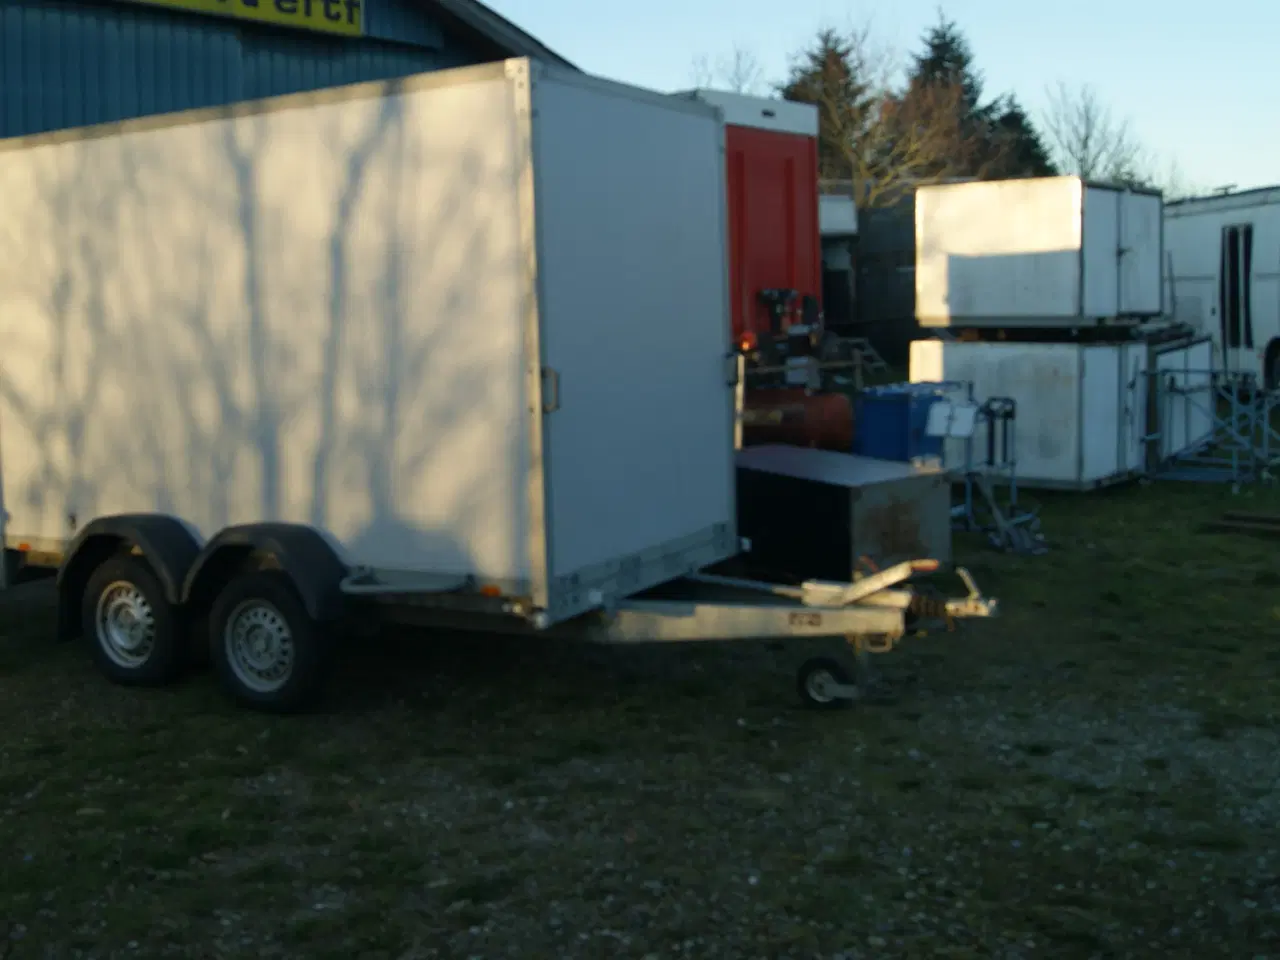 Billede 1 - Udlejning af diverse trailere. i 6270 Tønder.